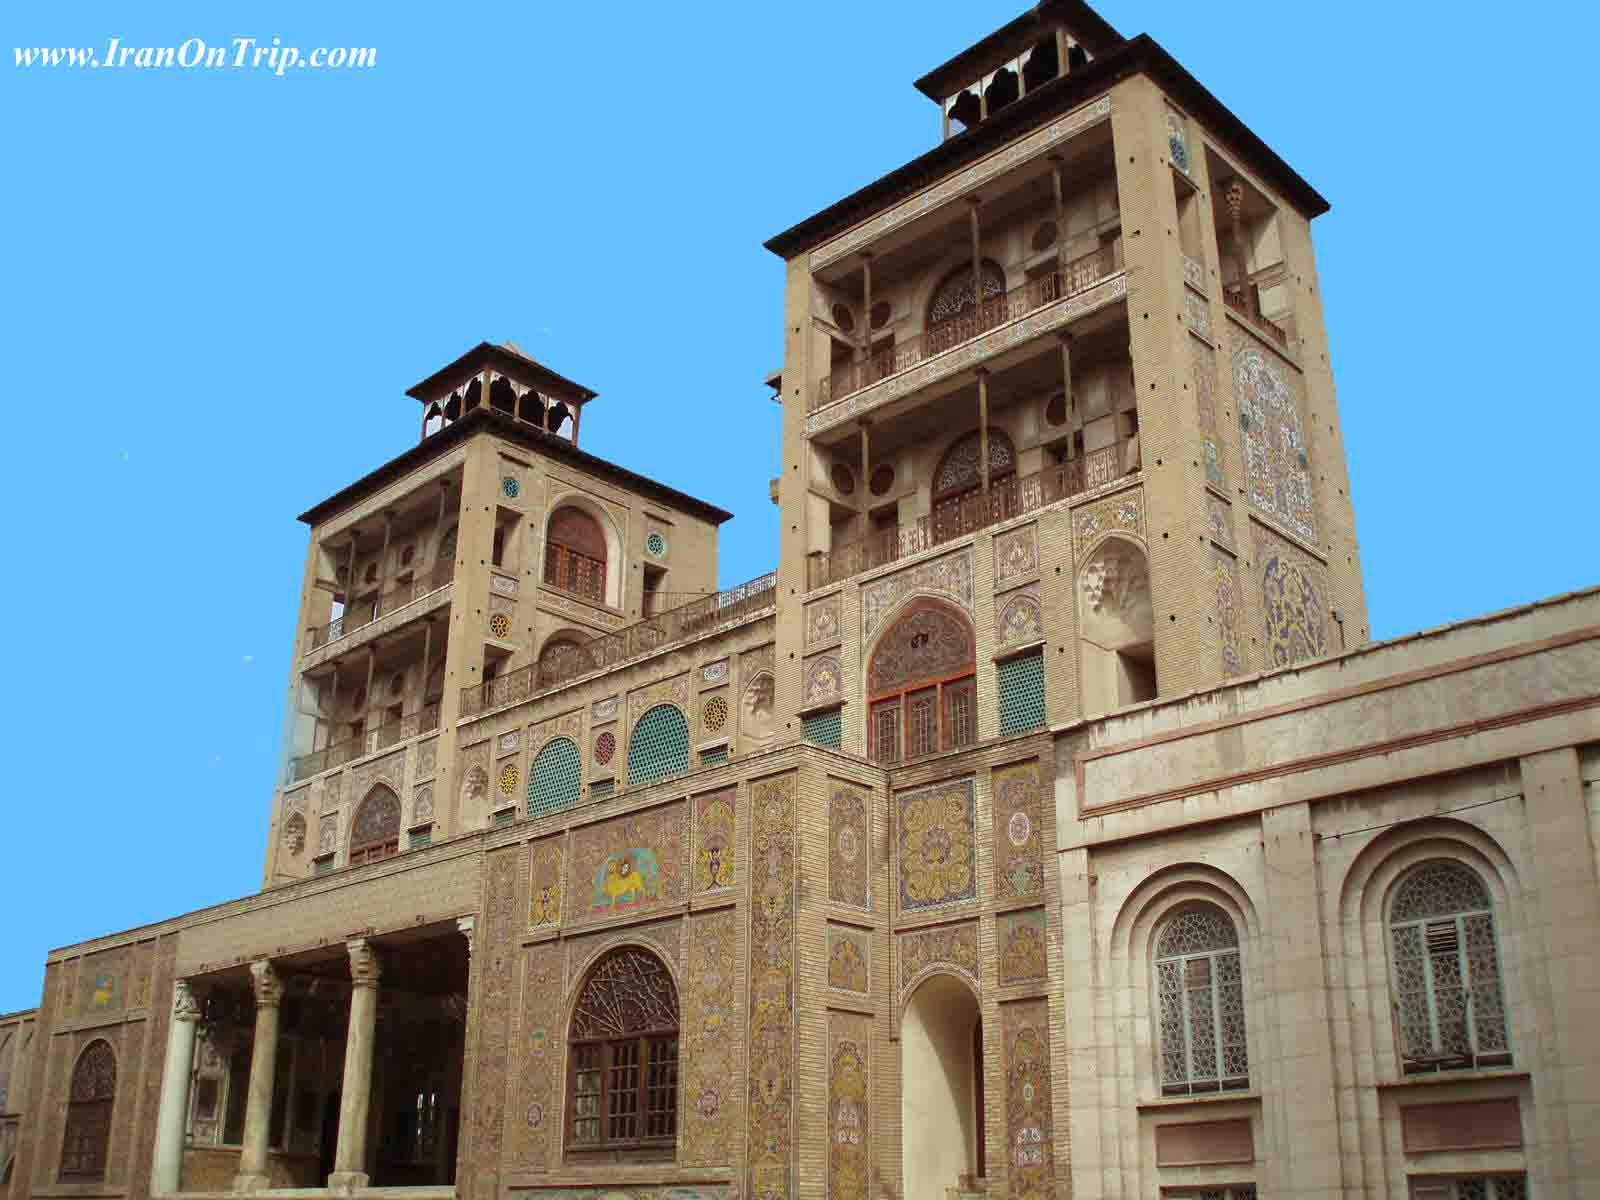 Golestan Palace - Palaces of Iran